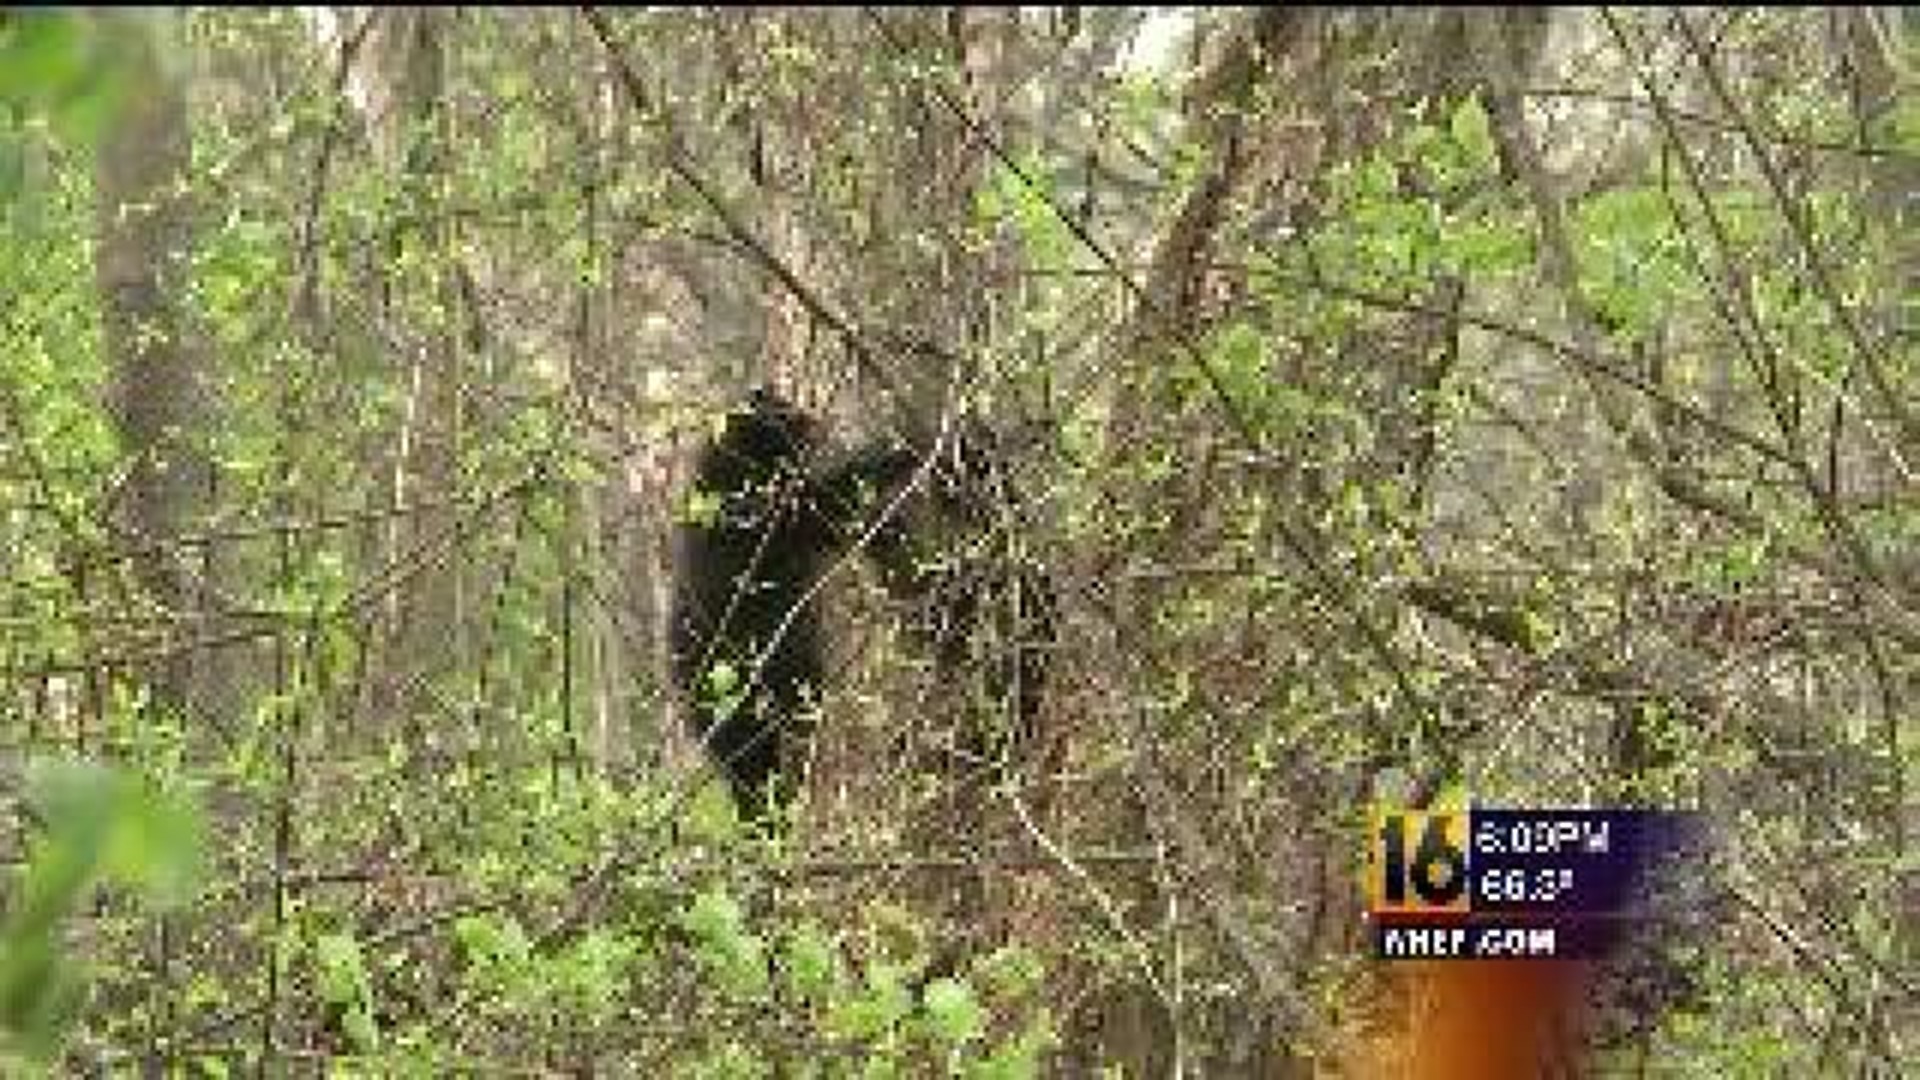 Bears Visit Park, Food Blamed